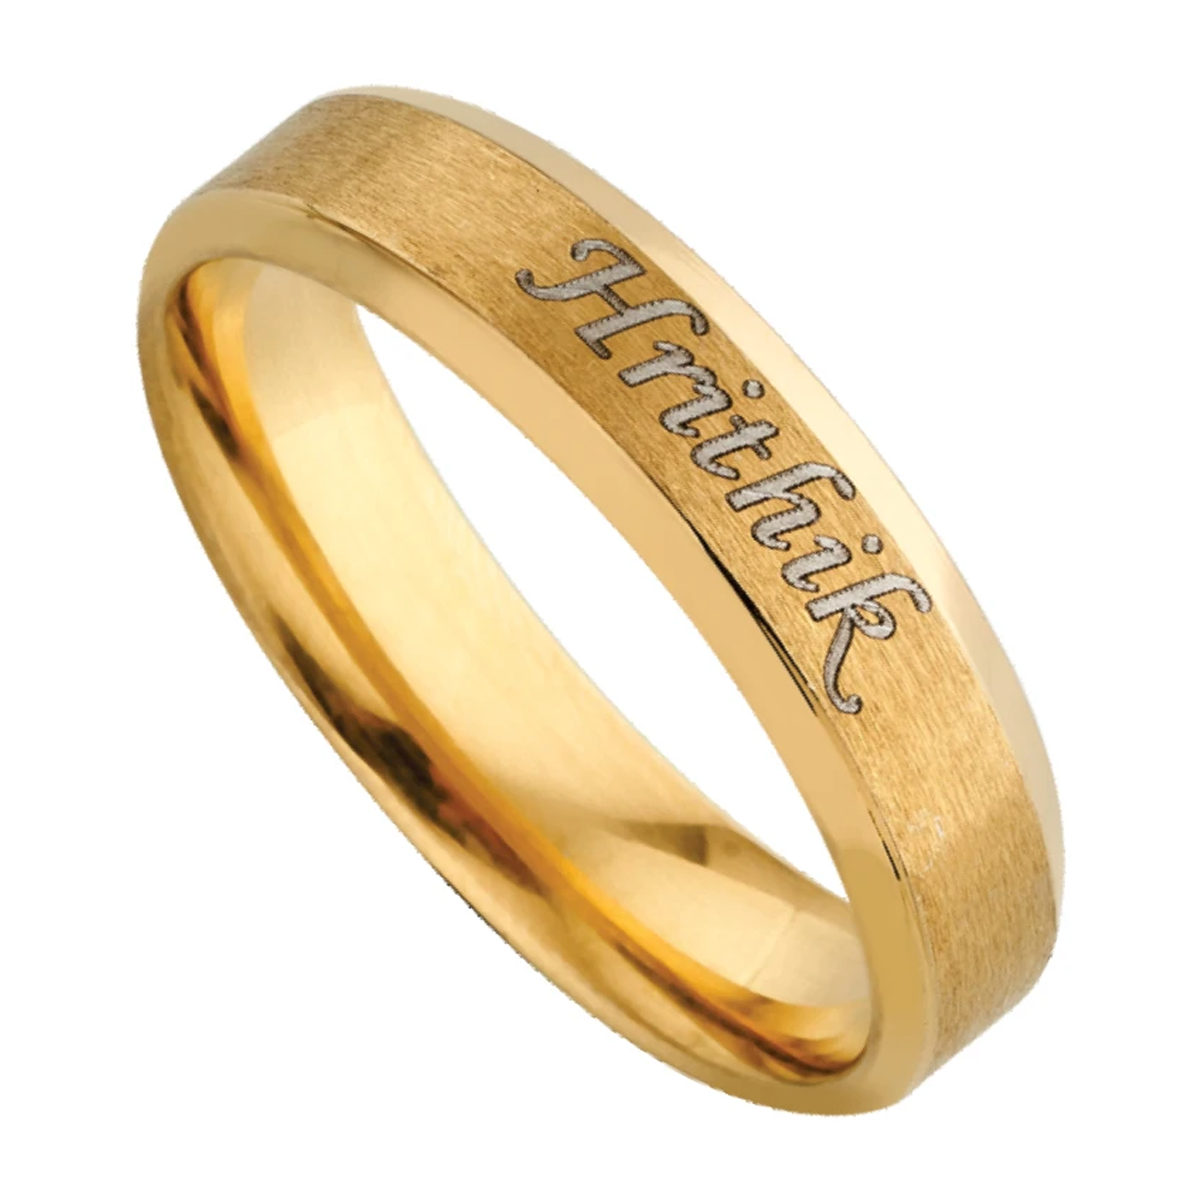 SUNIL Name Ring - Buy Certified Gold & Diamond Rings Online | KuberBox.com  - KuberBox.com